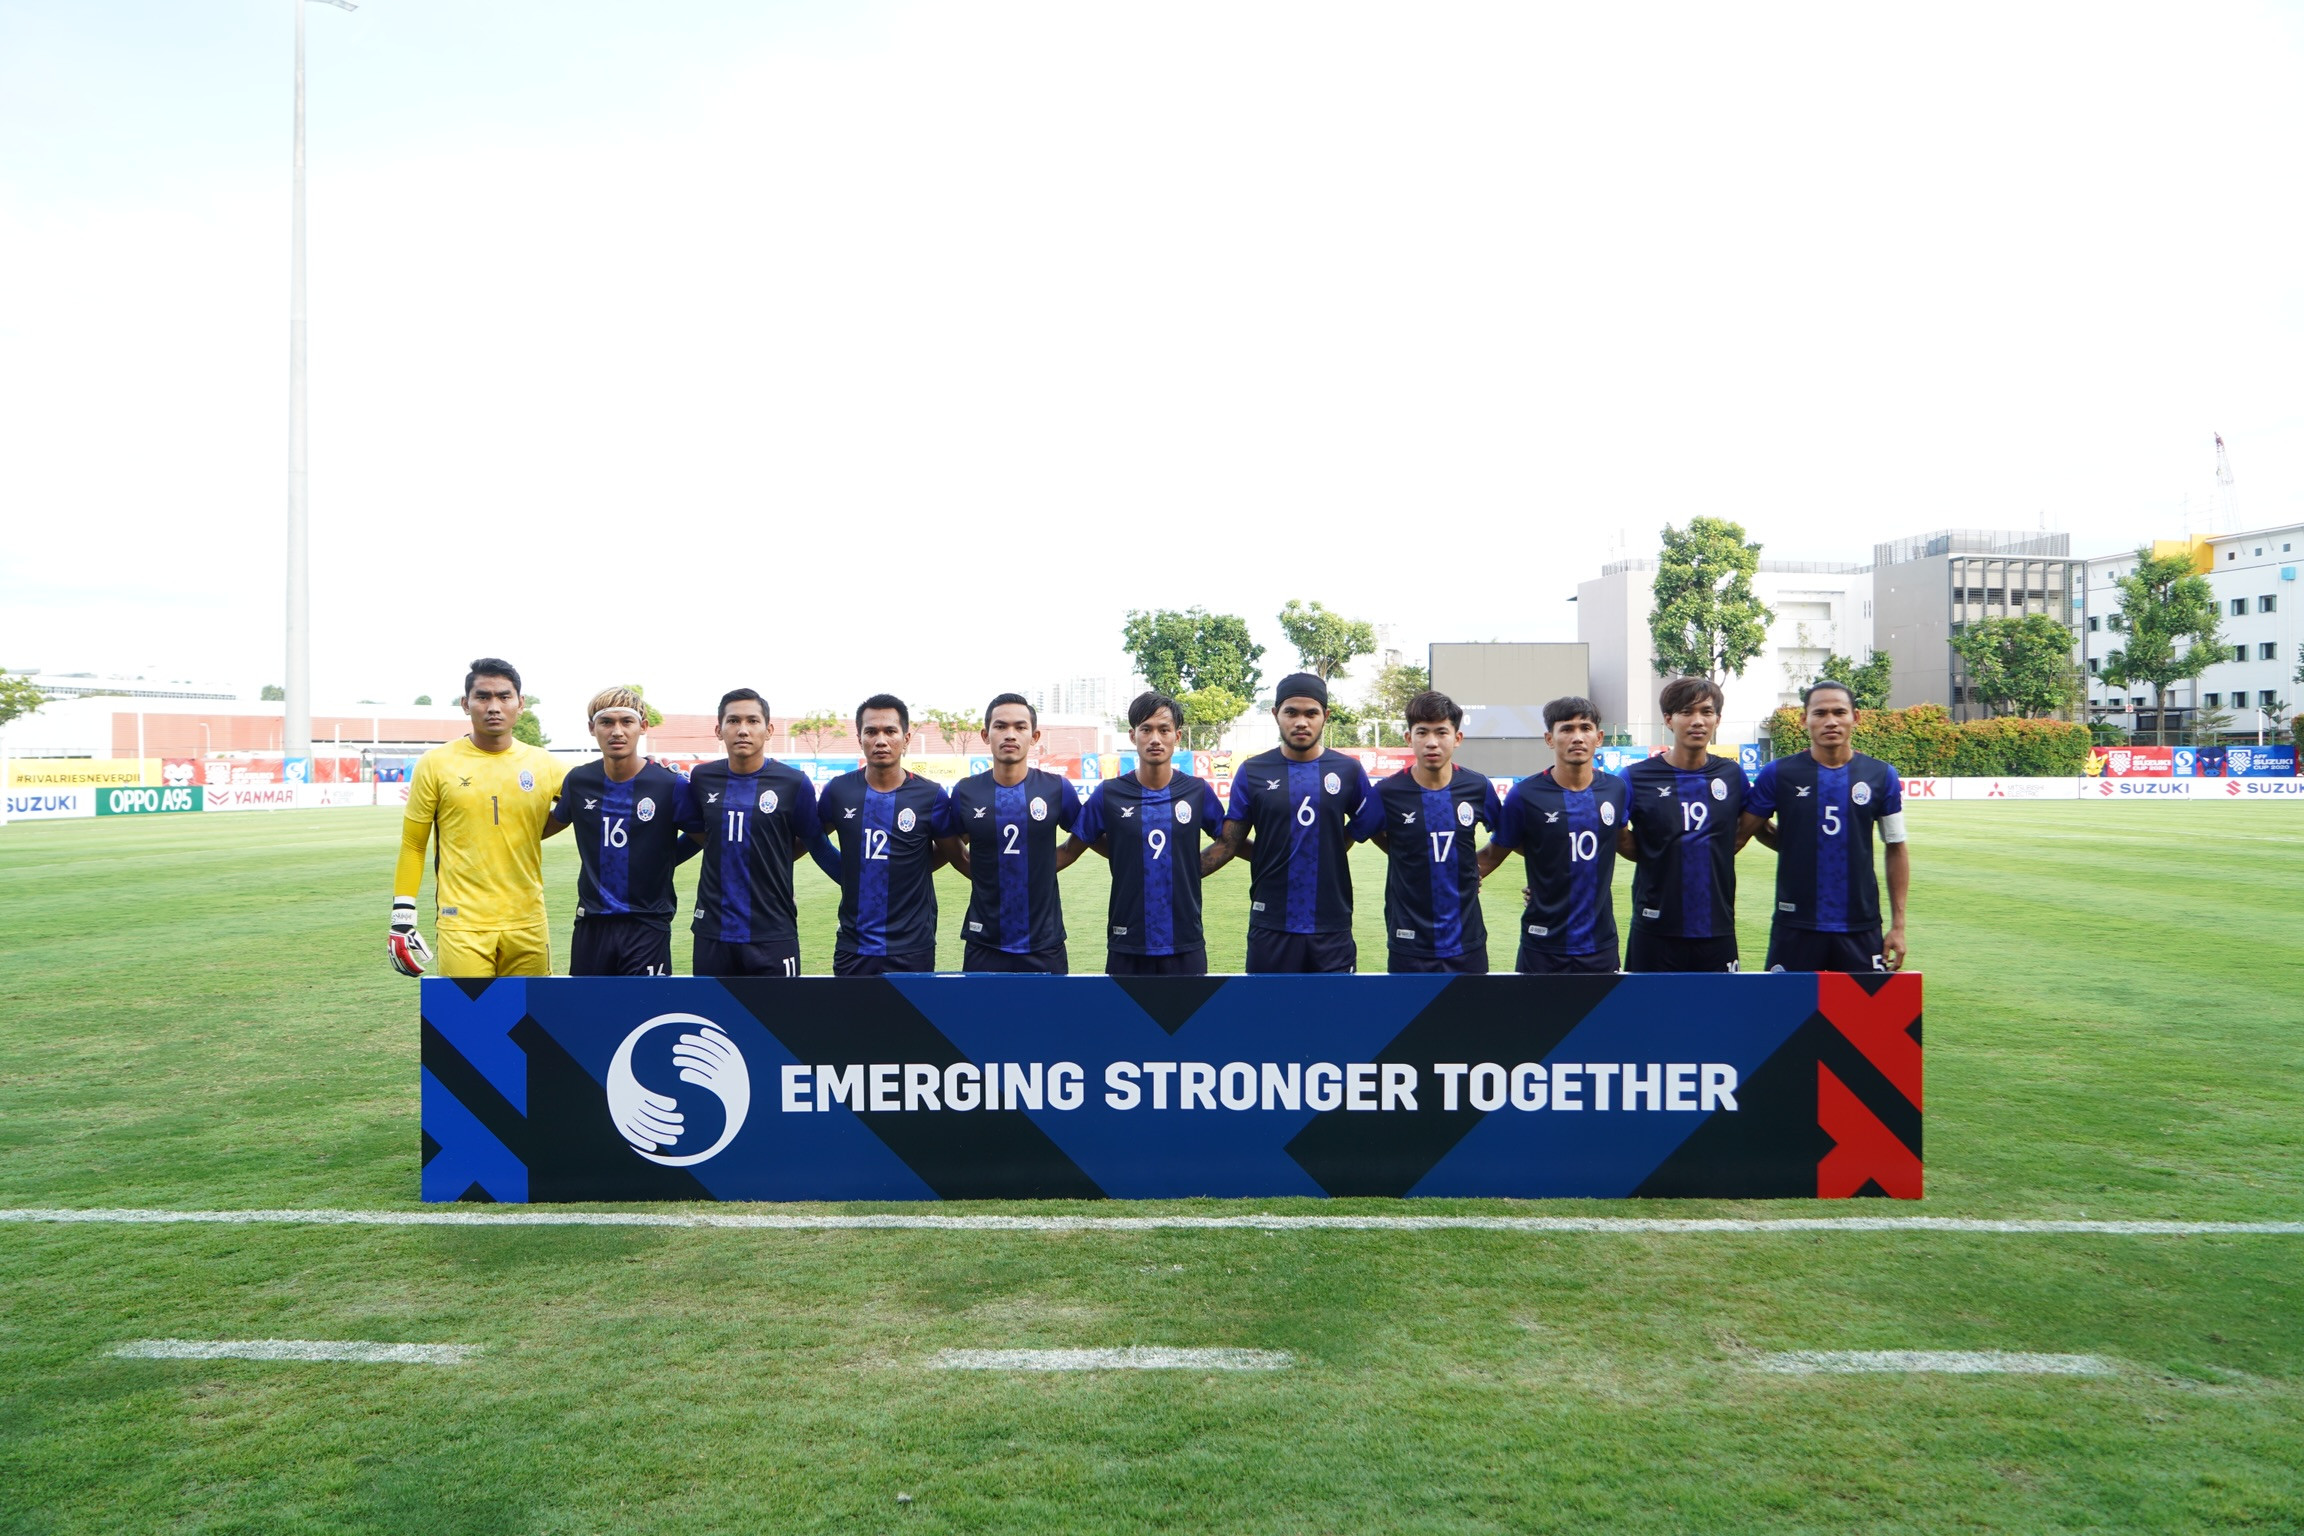 Đội tuyển Campuchia vừa giành được 3 điểm đầu tiên ở AFF Suzuki Cup 2020 sau khi đánh bại Lào 3-0. Ảnh BTC AFF Cup